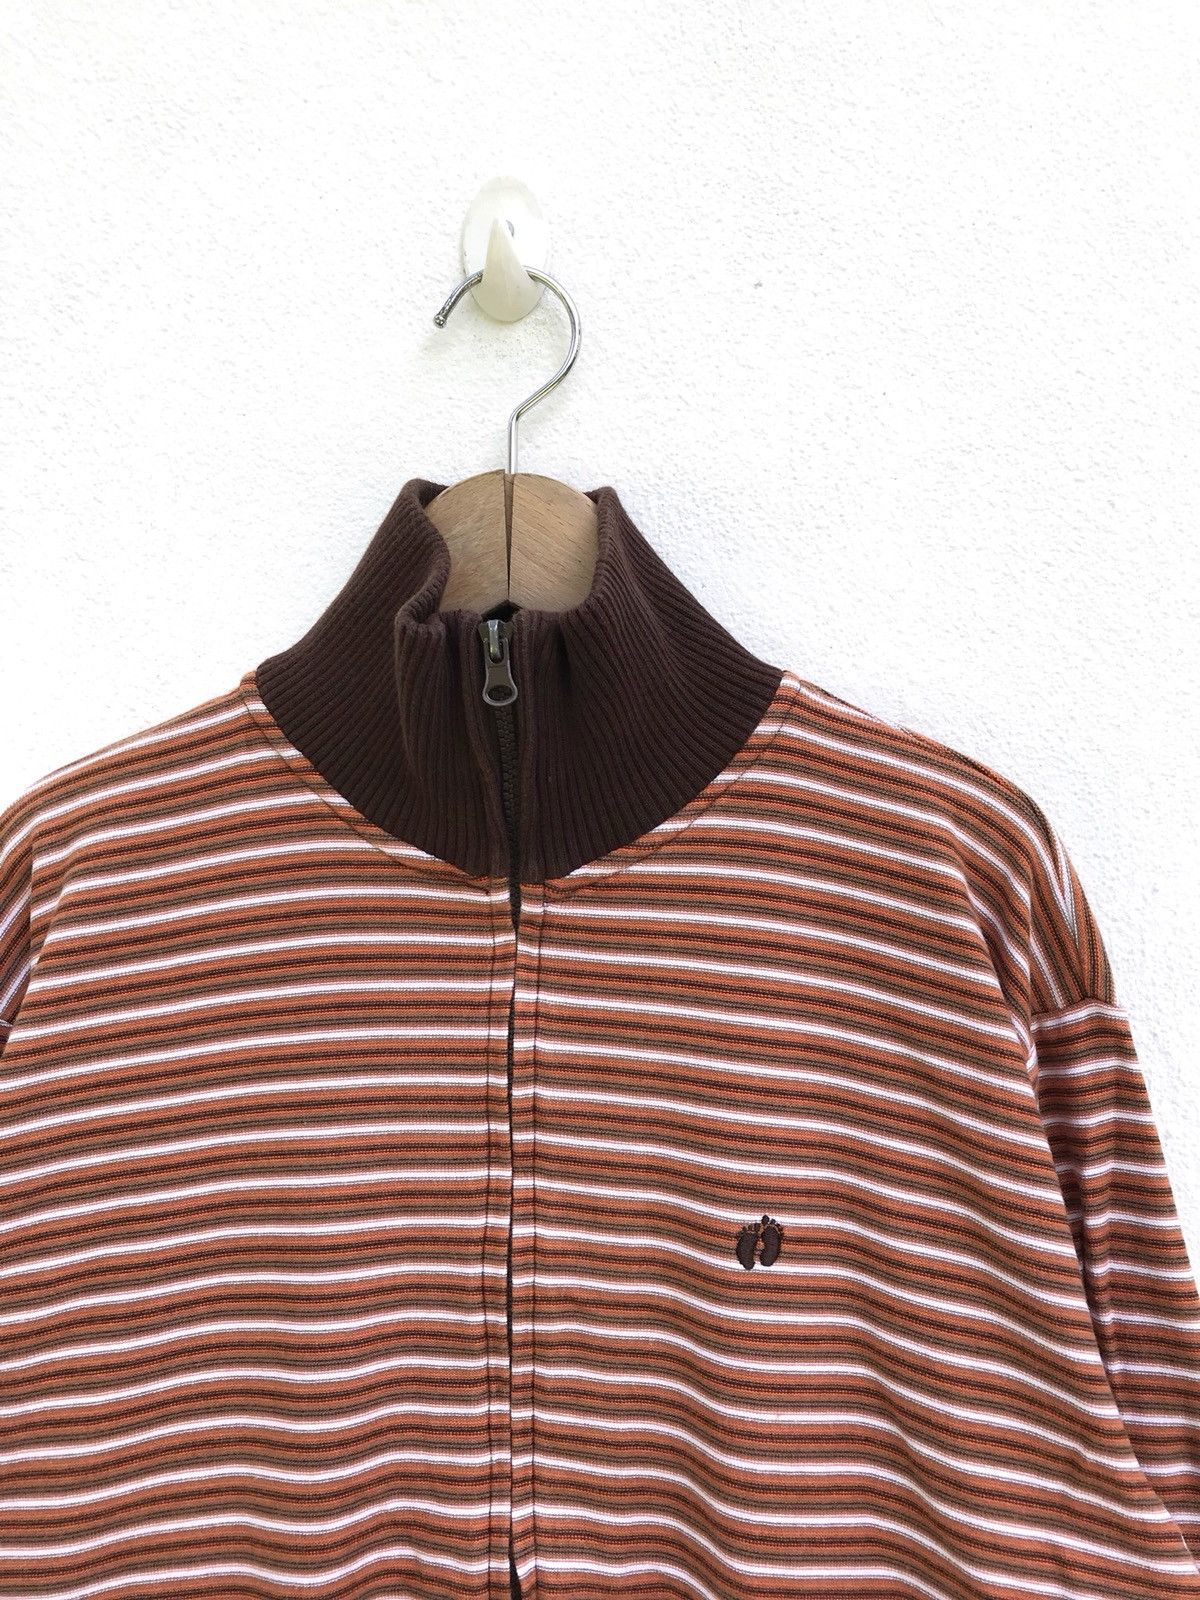 Hang Ten Hang Ten Striped Zipper Sweater Size US M / EU 48-50 / 2 - 2 Preview